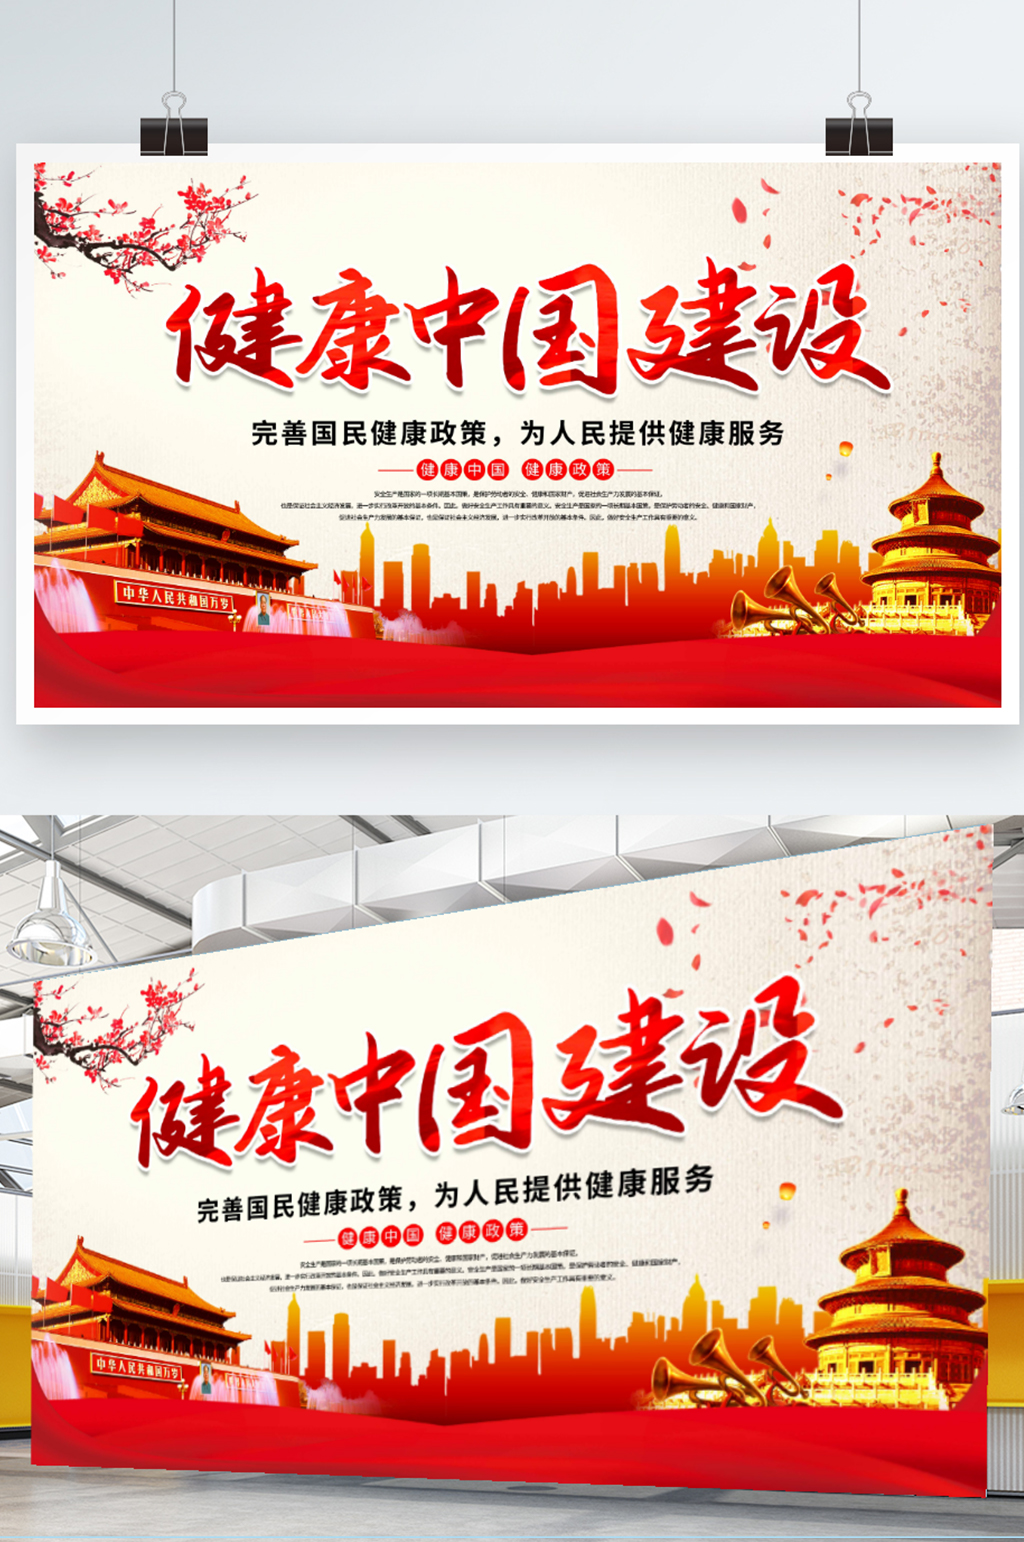 大气健康中国建设展板海报素材